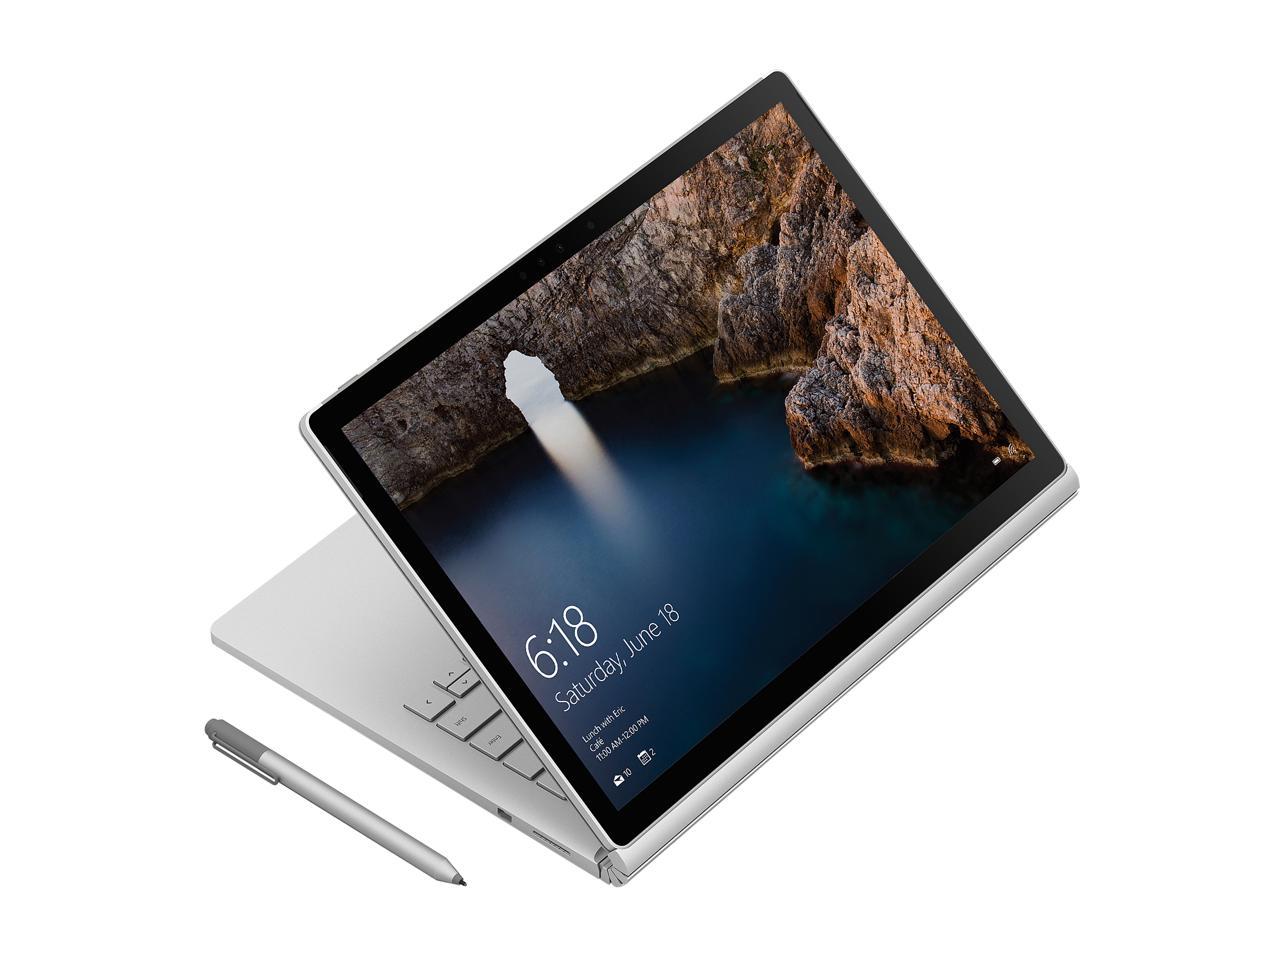 Open Box: Microsoft Surface Book SX3-00001 Intel Core i5 6th Gen 